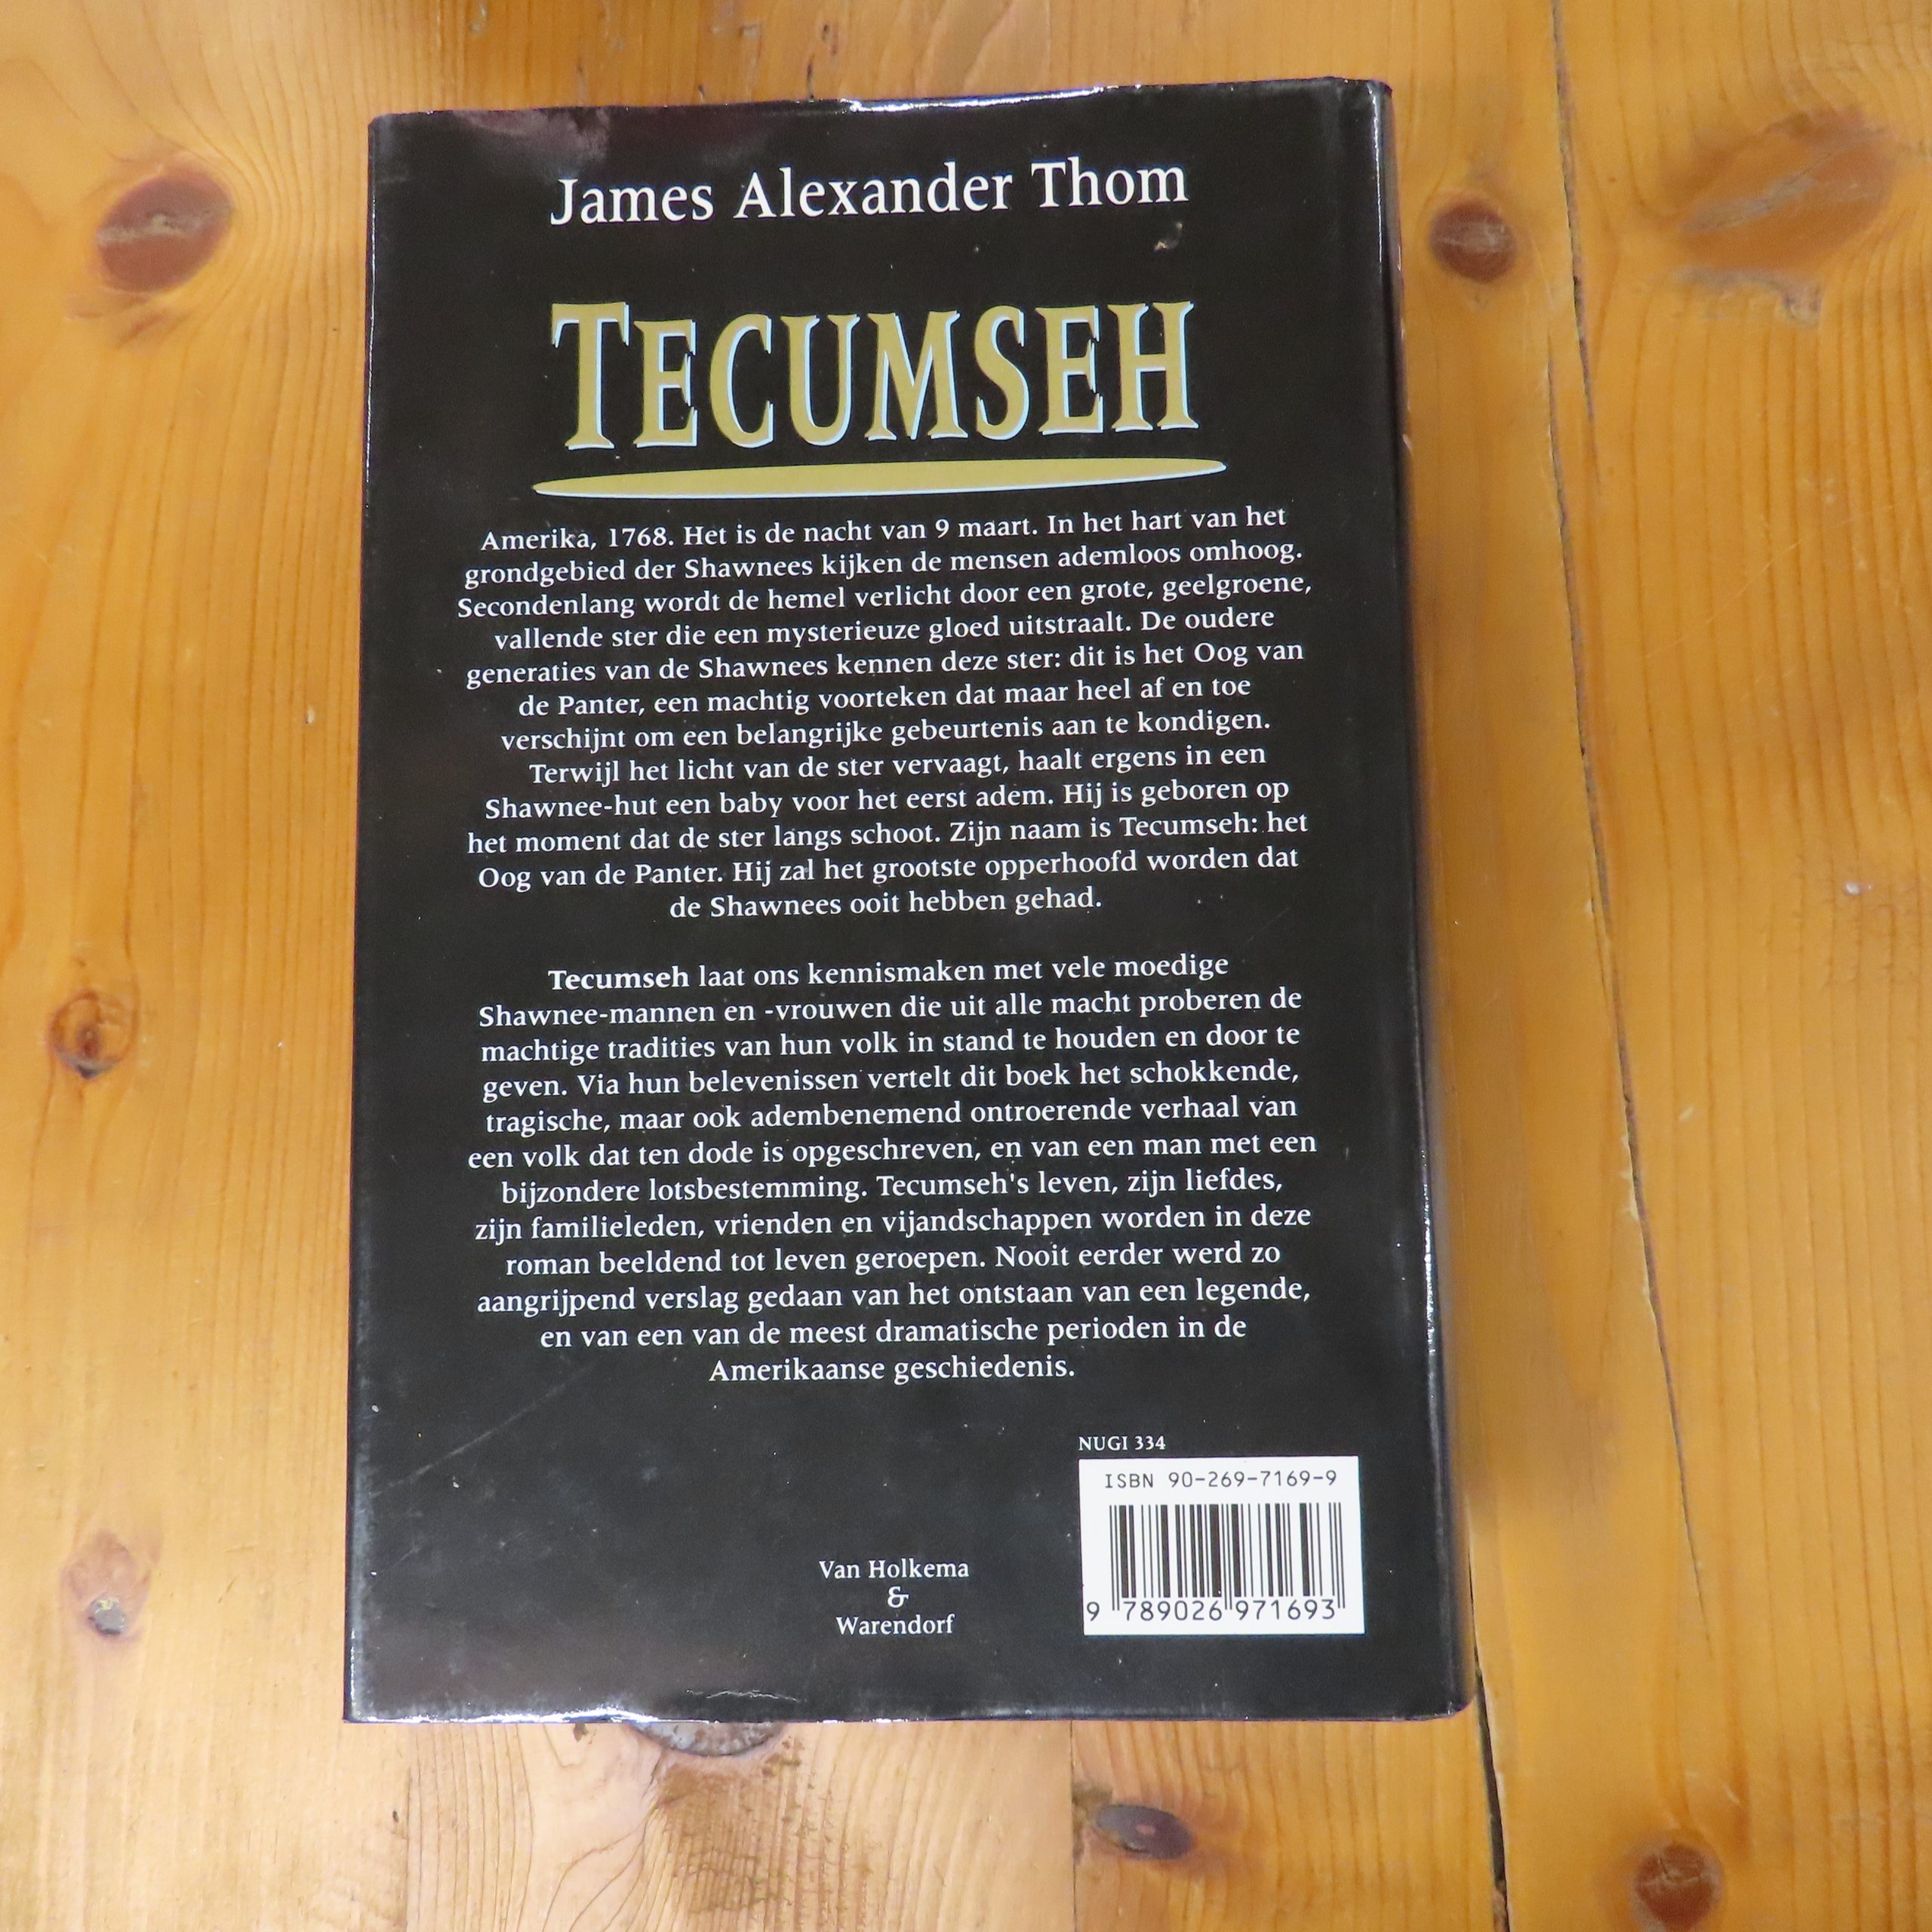 Boek “Tecumseh” van James Alexander Thom